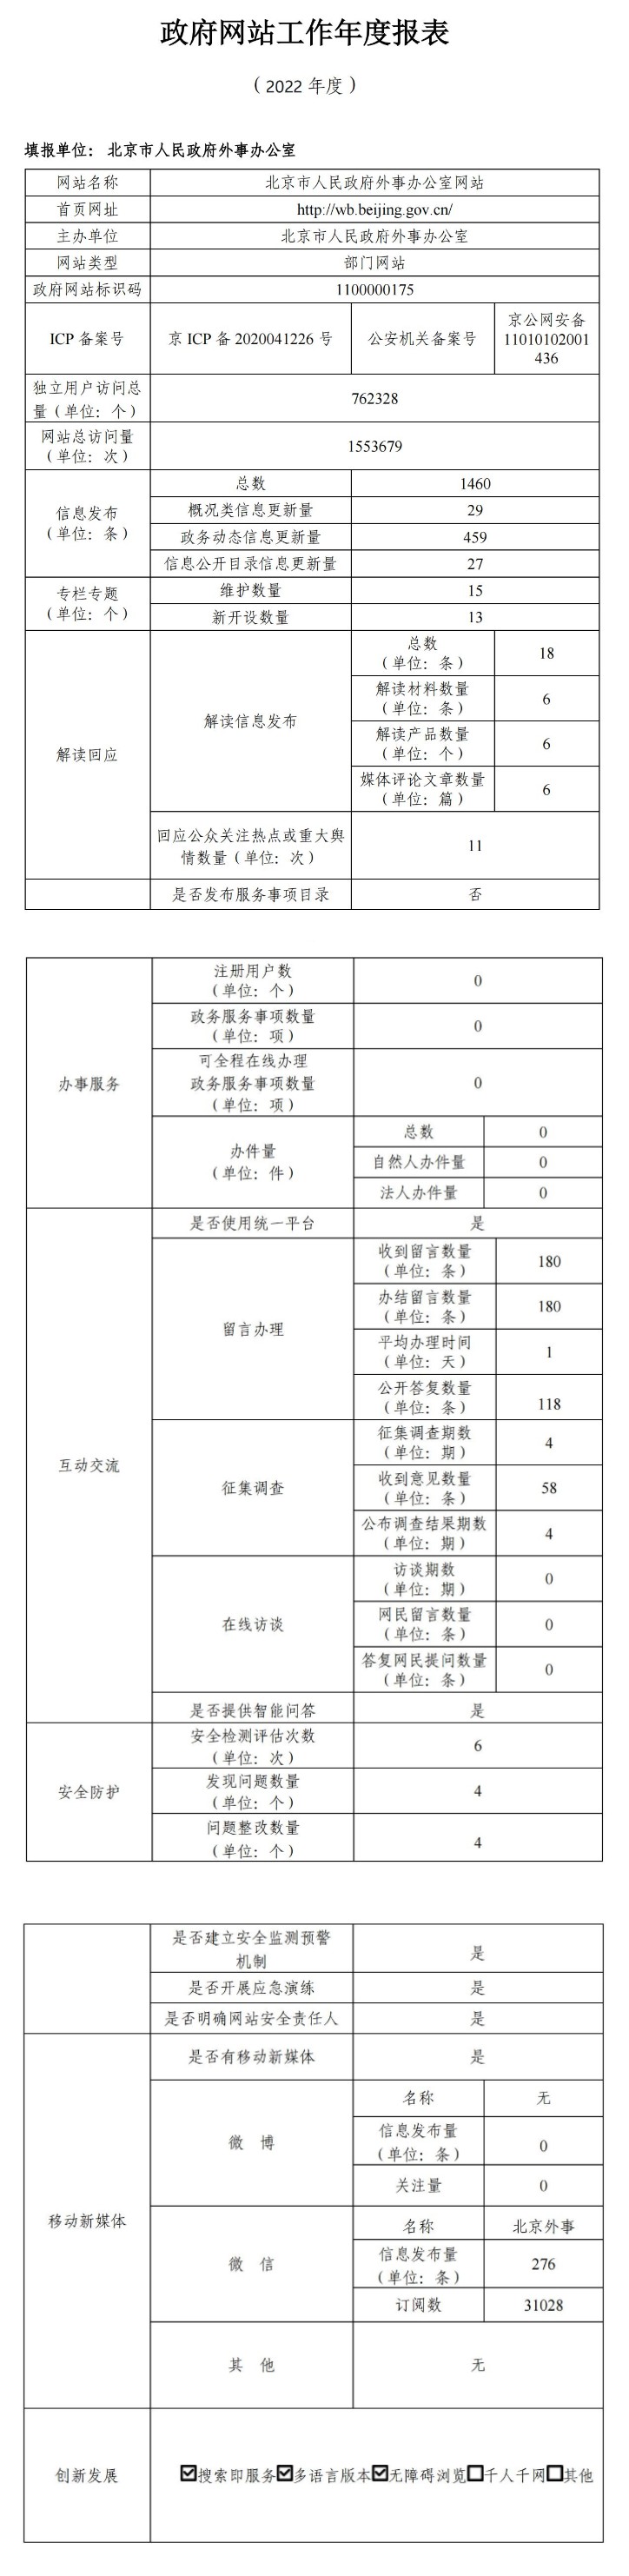 北京市人民政府外事办公室2022年政府网站年度工作报表